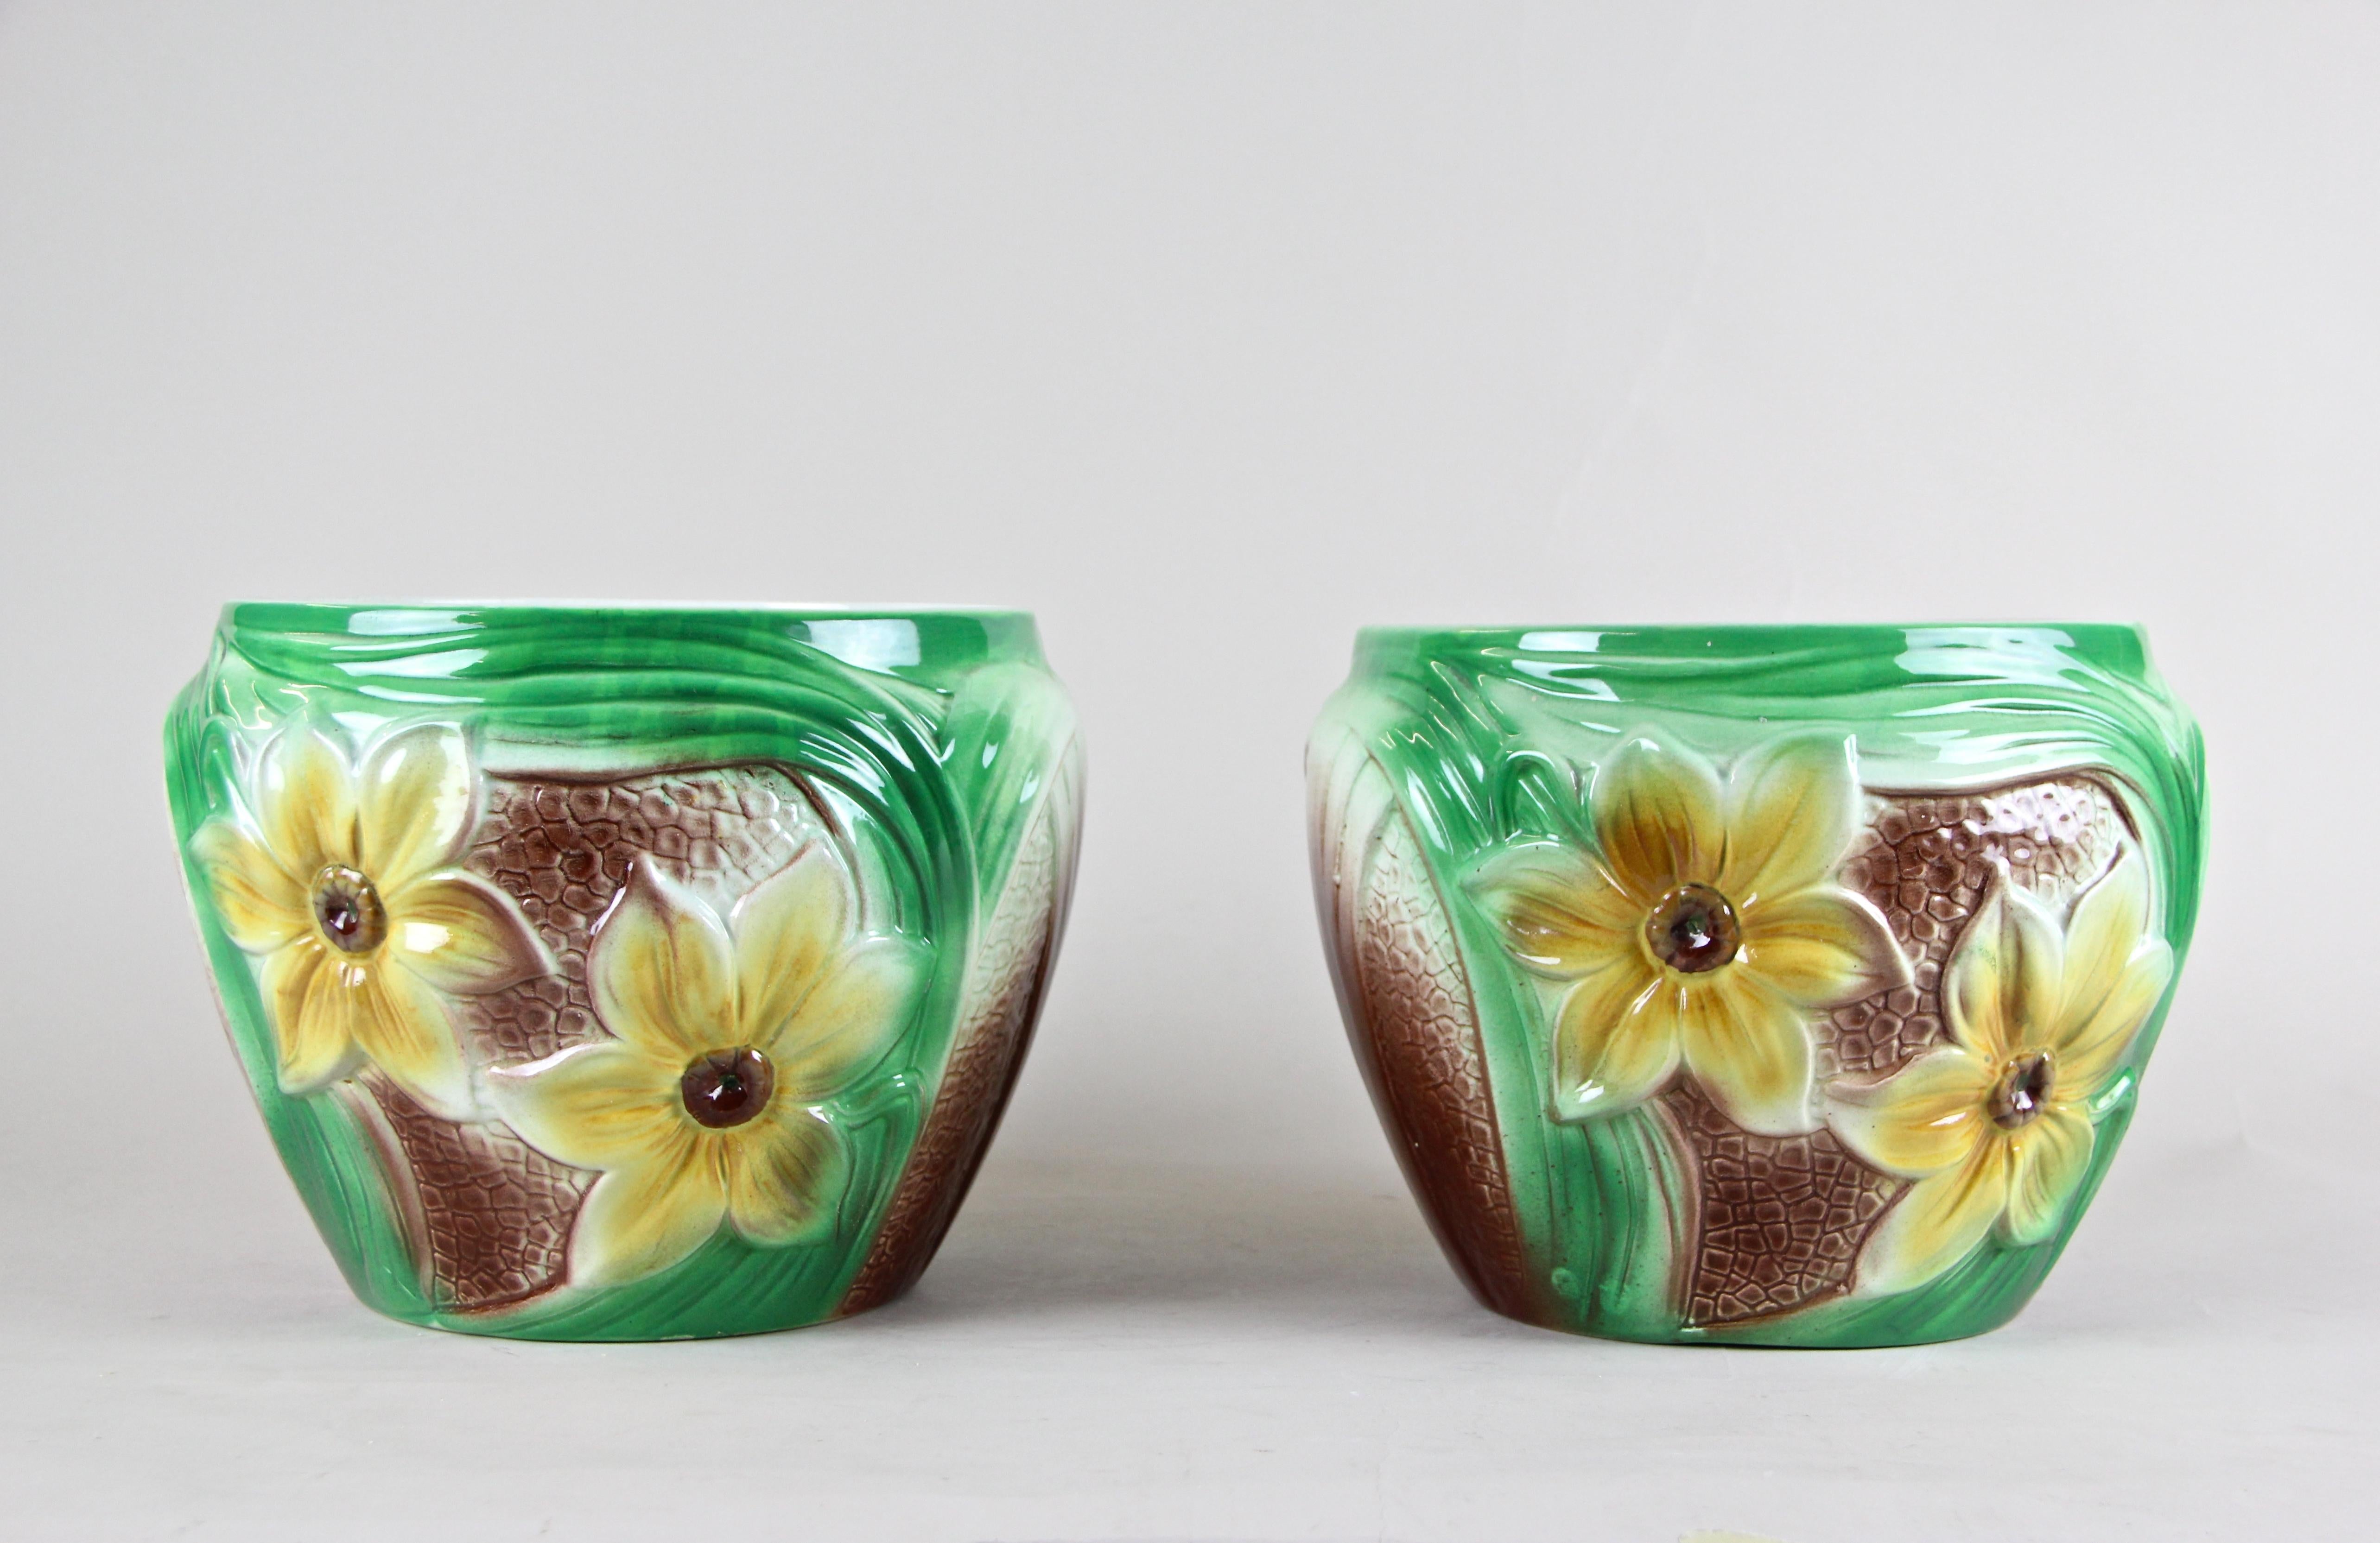 Aus Belgien um 1920 und von Saint Ghislain stammt dieses schöne Set von Übertöpfen aus Keramik im Art-Deco-Stil. Das schöne Design mit großen gelben Blüten auf zwei Seiten jedes Übertopfes in Verbindung mit der braunen und grünen Farbgebung macht